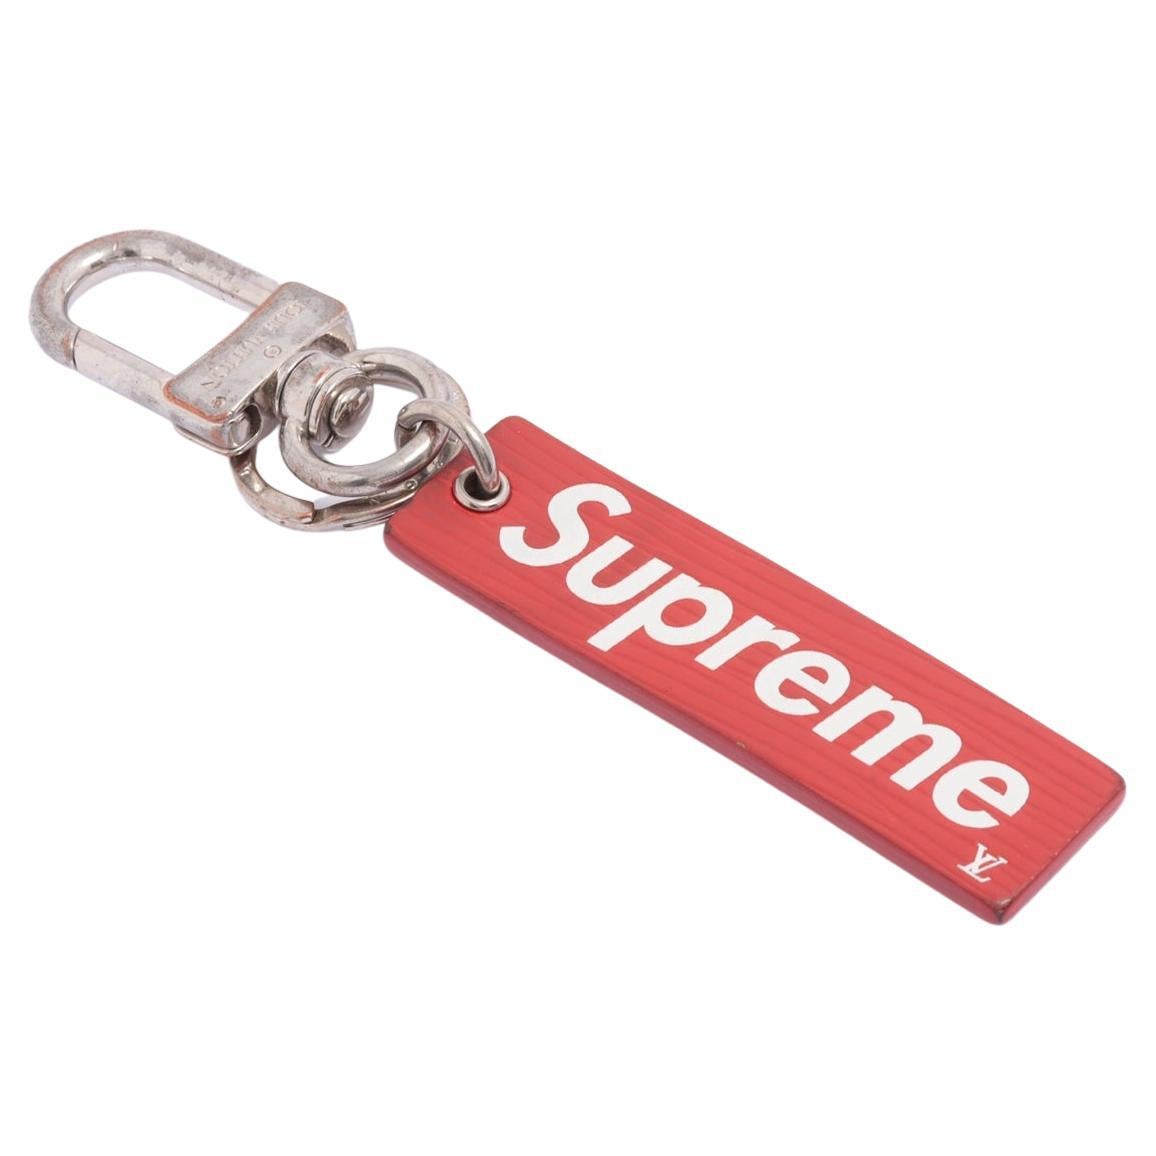 Supreme Keychain - 2 For Sale on 1stDibs | supreme keychain 